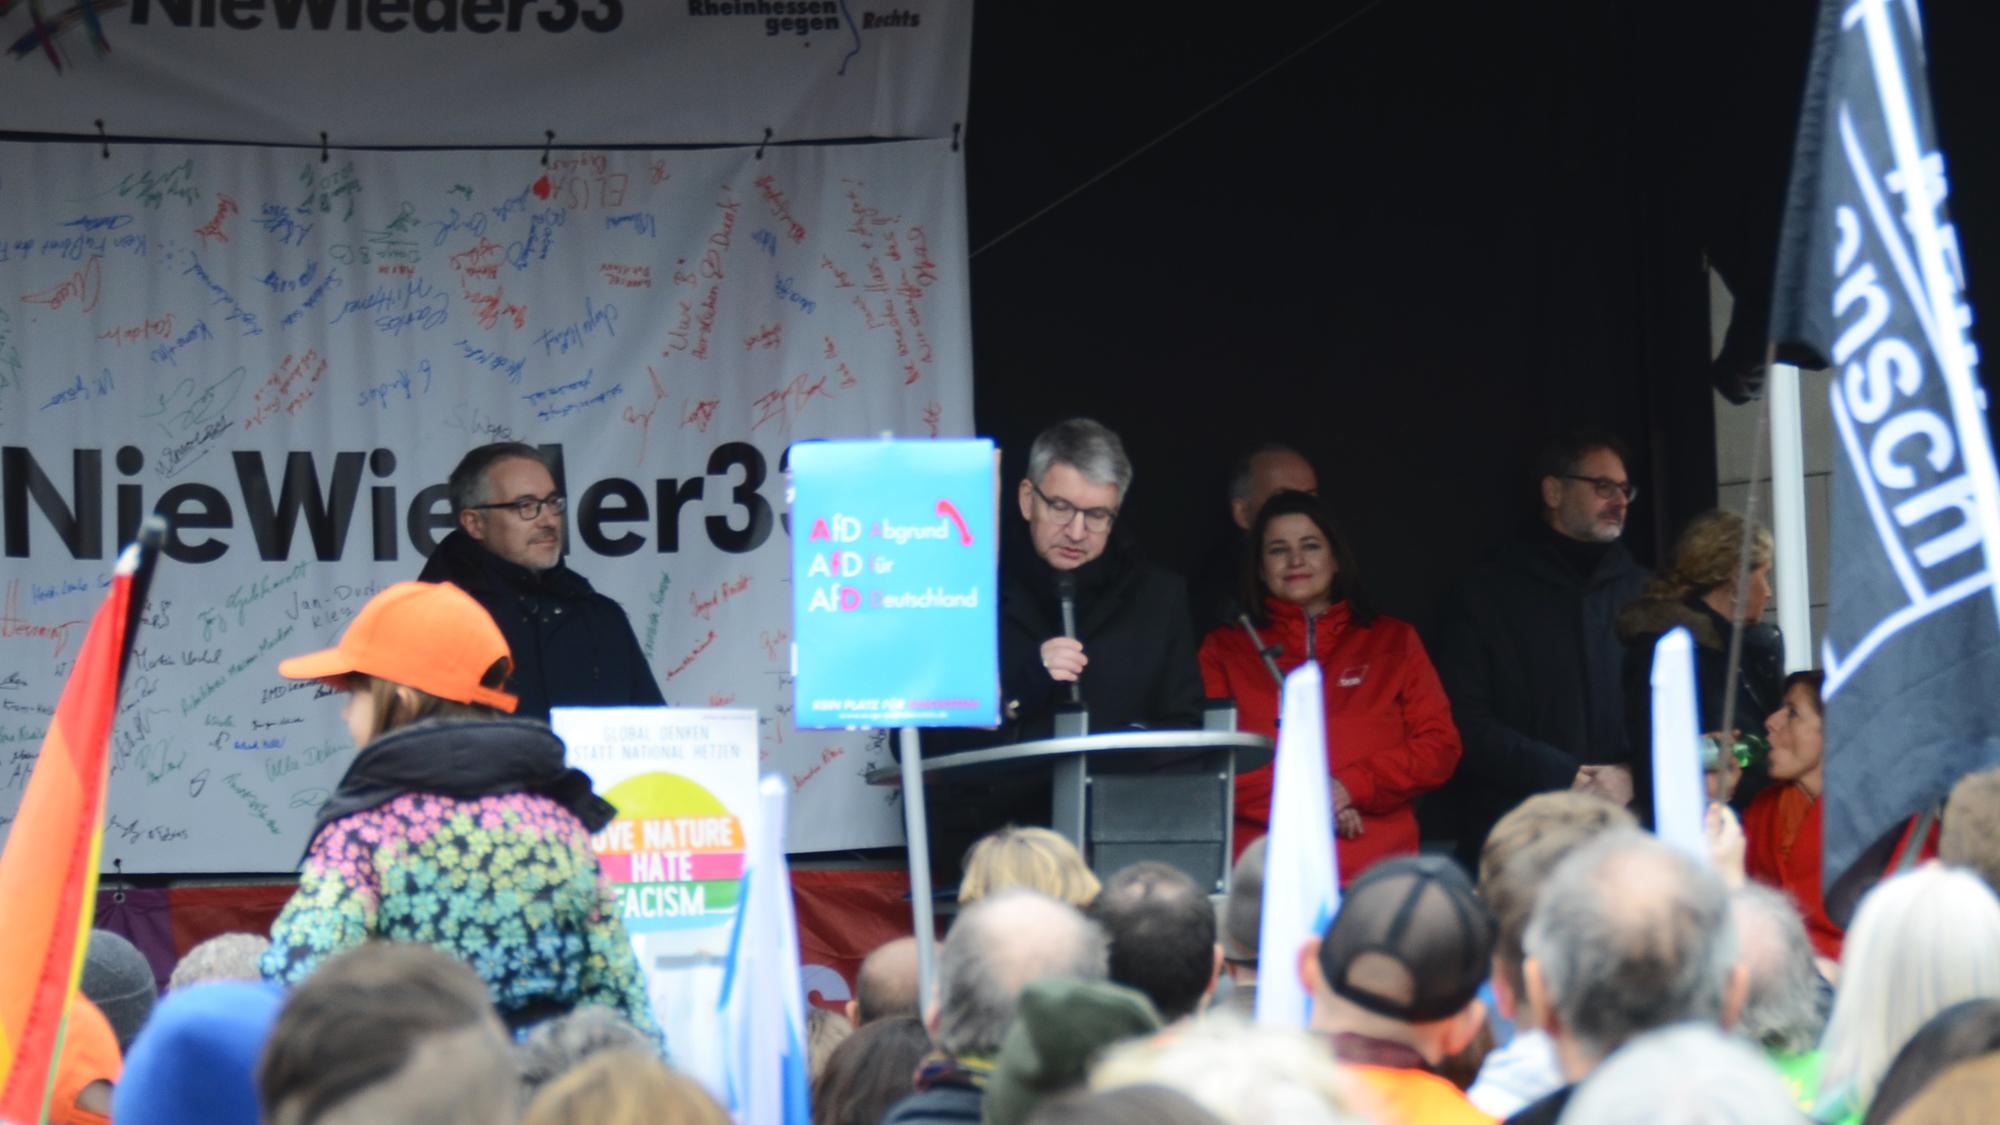 Rund 10.000 Menschen demonstrieren in Mainz gegen Rechtsextremismus